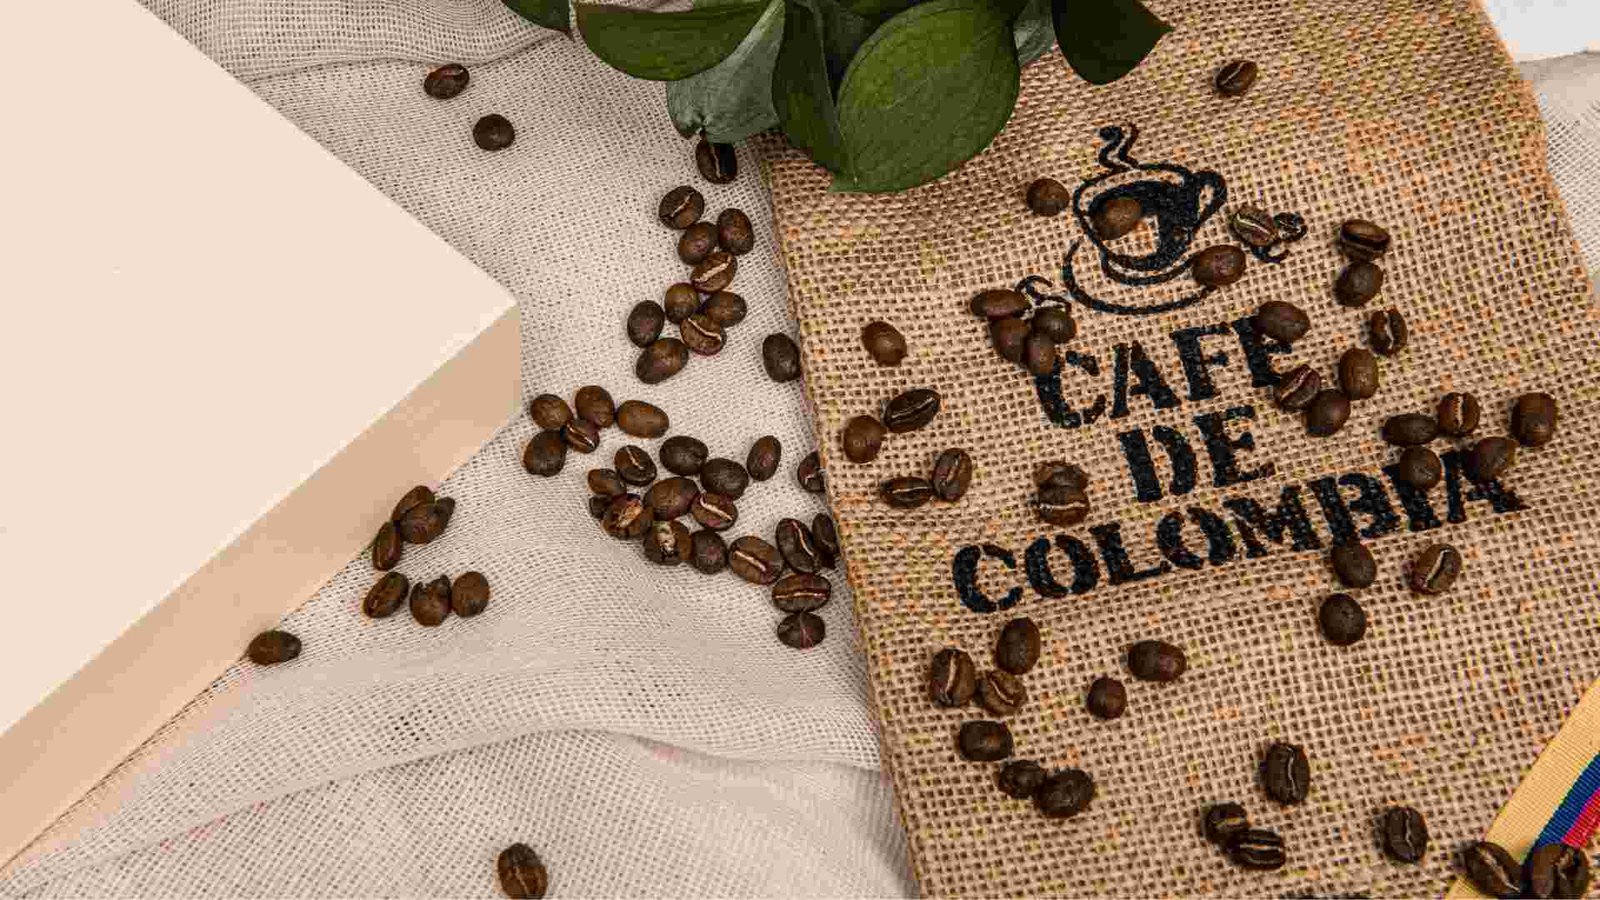 Featured image for “Cafés colombianos que tienes que probar en España”